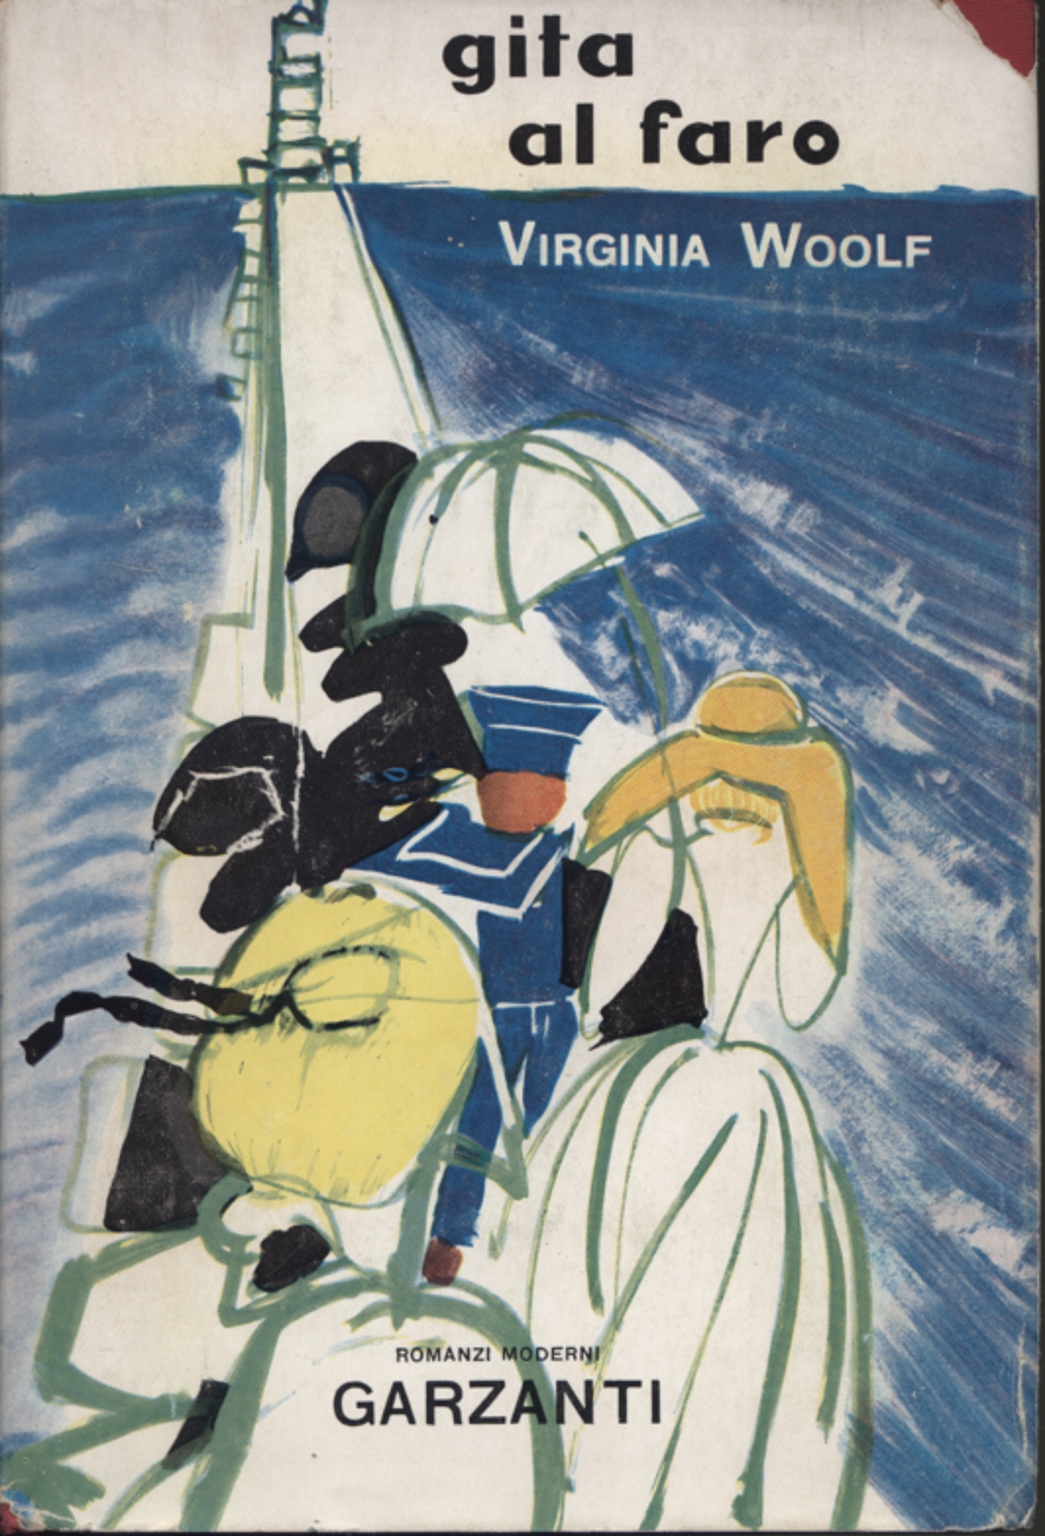 Voyage vers le phare de Virginia Woolf